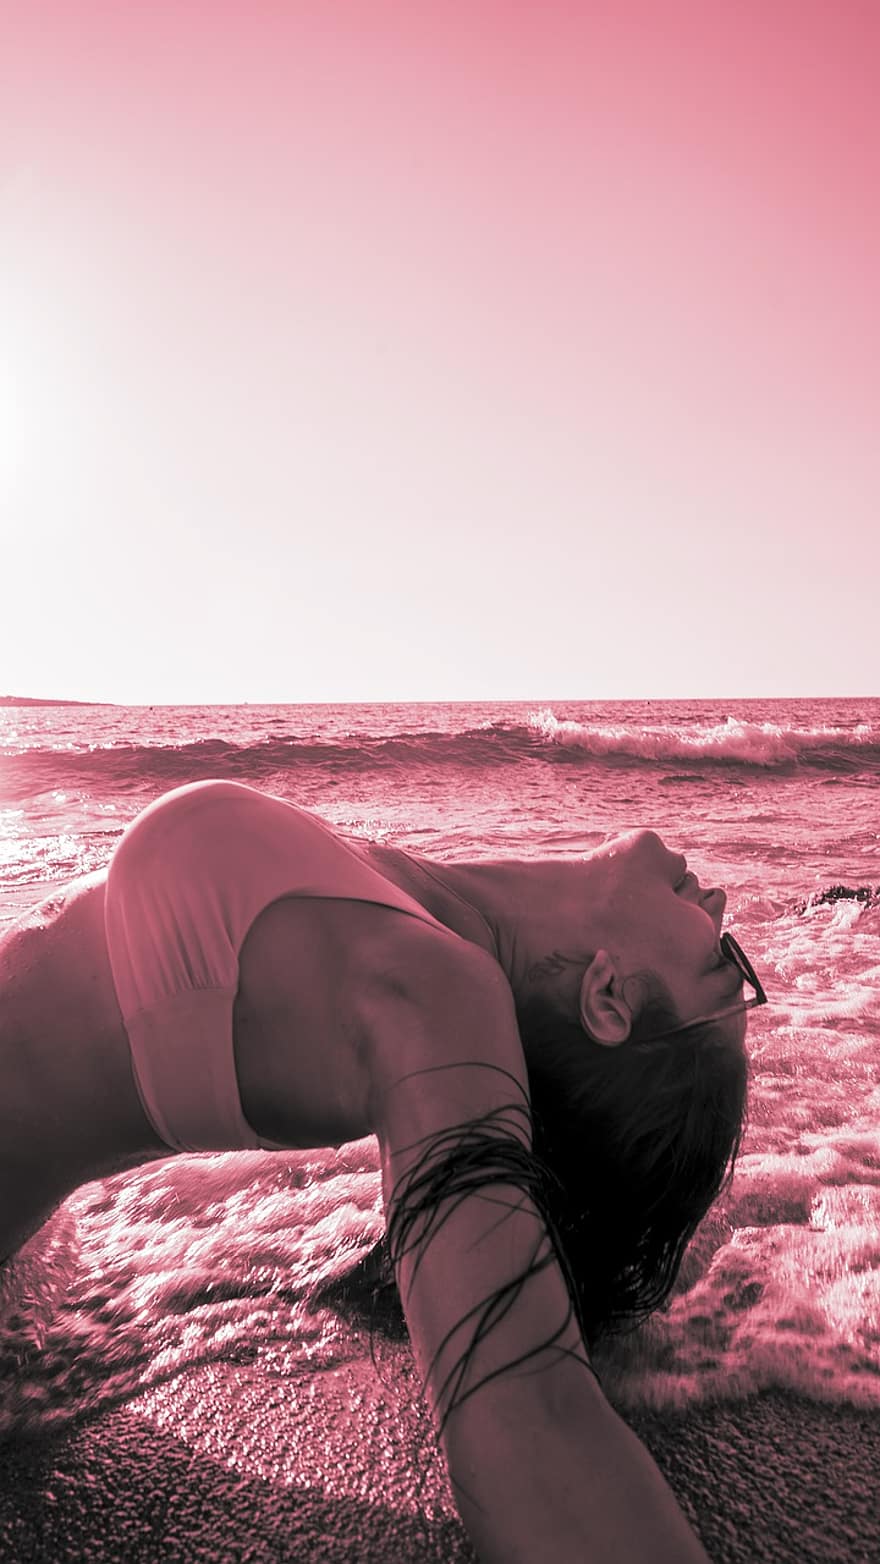 mulher, mar, ondas, posando, agua, meditação, ioga, zen, atenção plena, espiritualidade, meditar